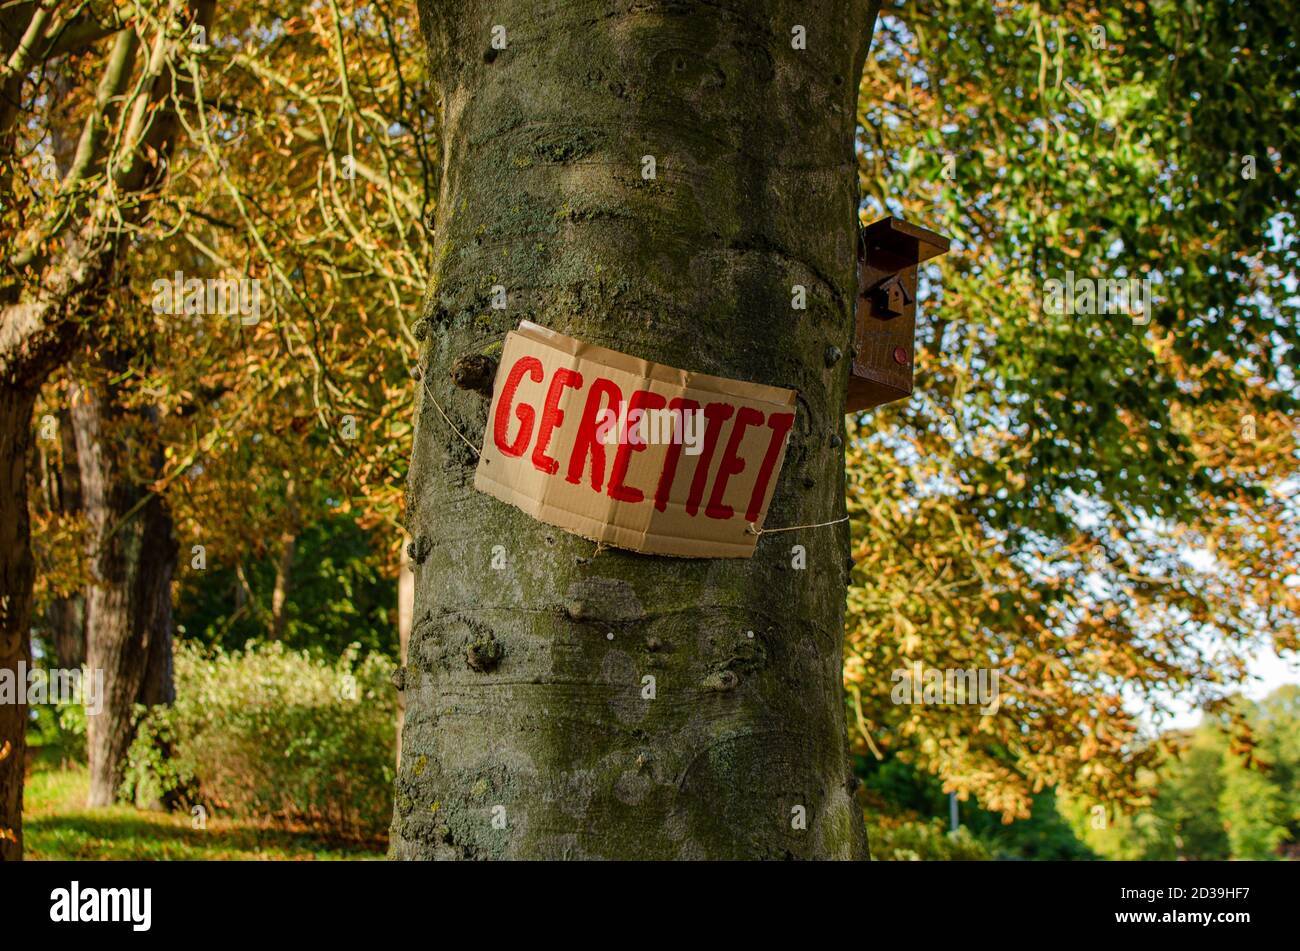 'Gerettet' - Schild am Baum - Naturschutz Foto Stock